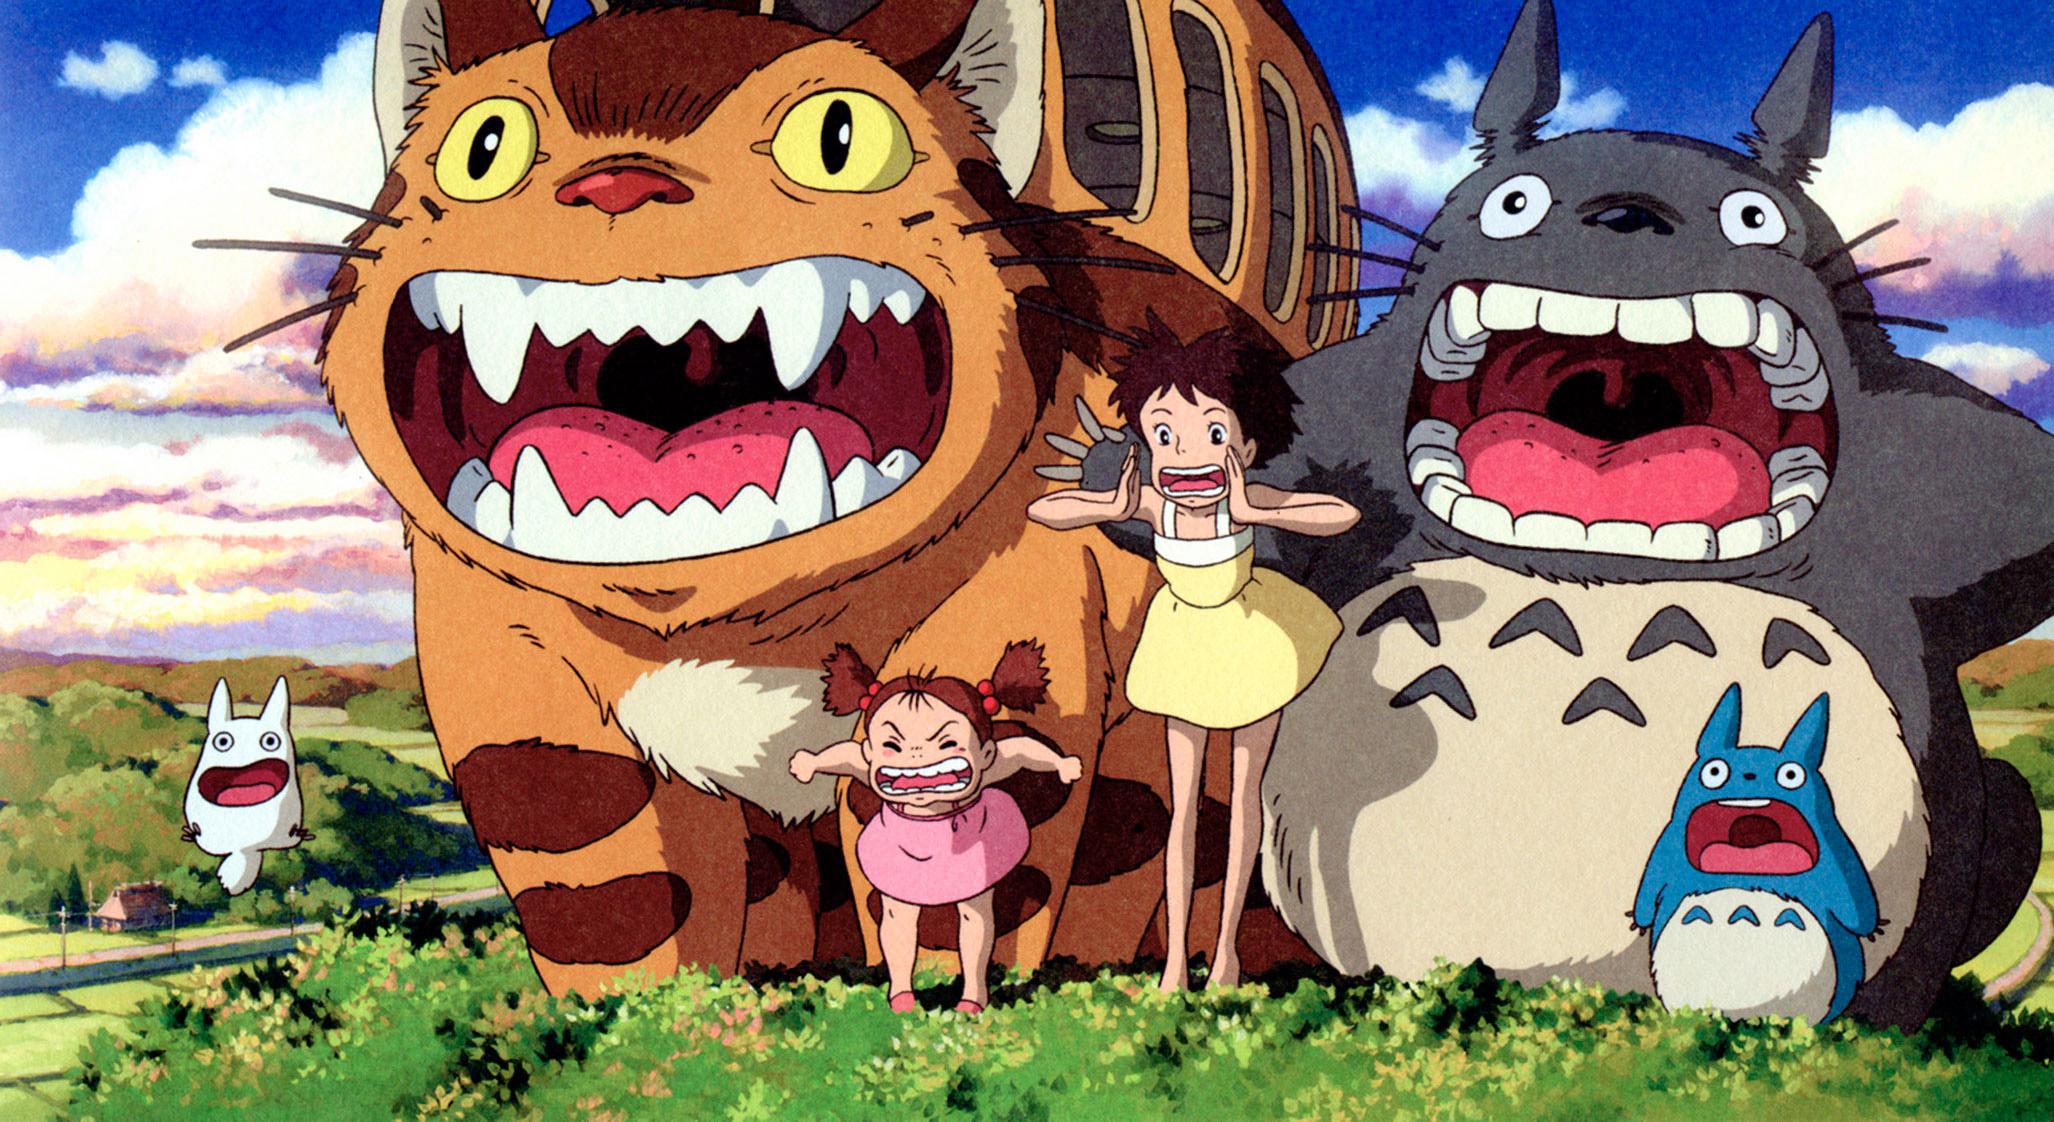 Festival do Rio terá mostra em homenagem ao Studio Ghibli